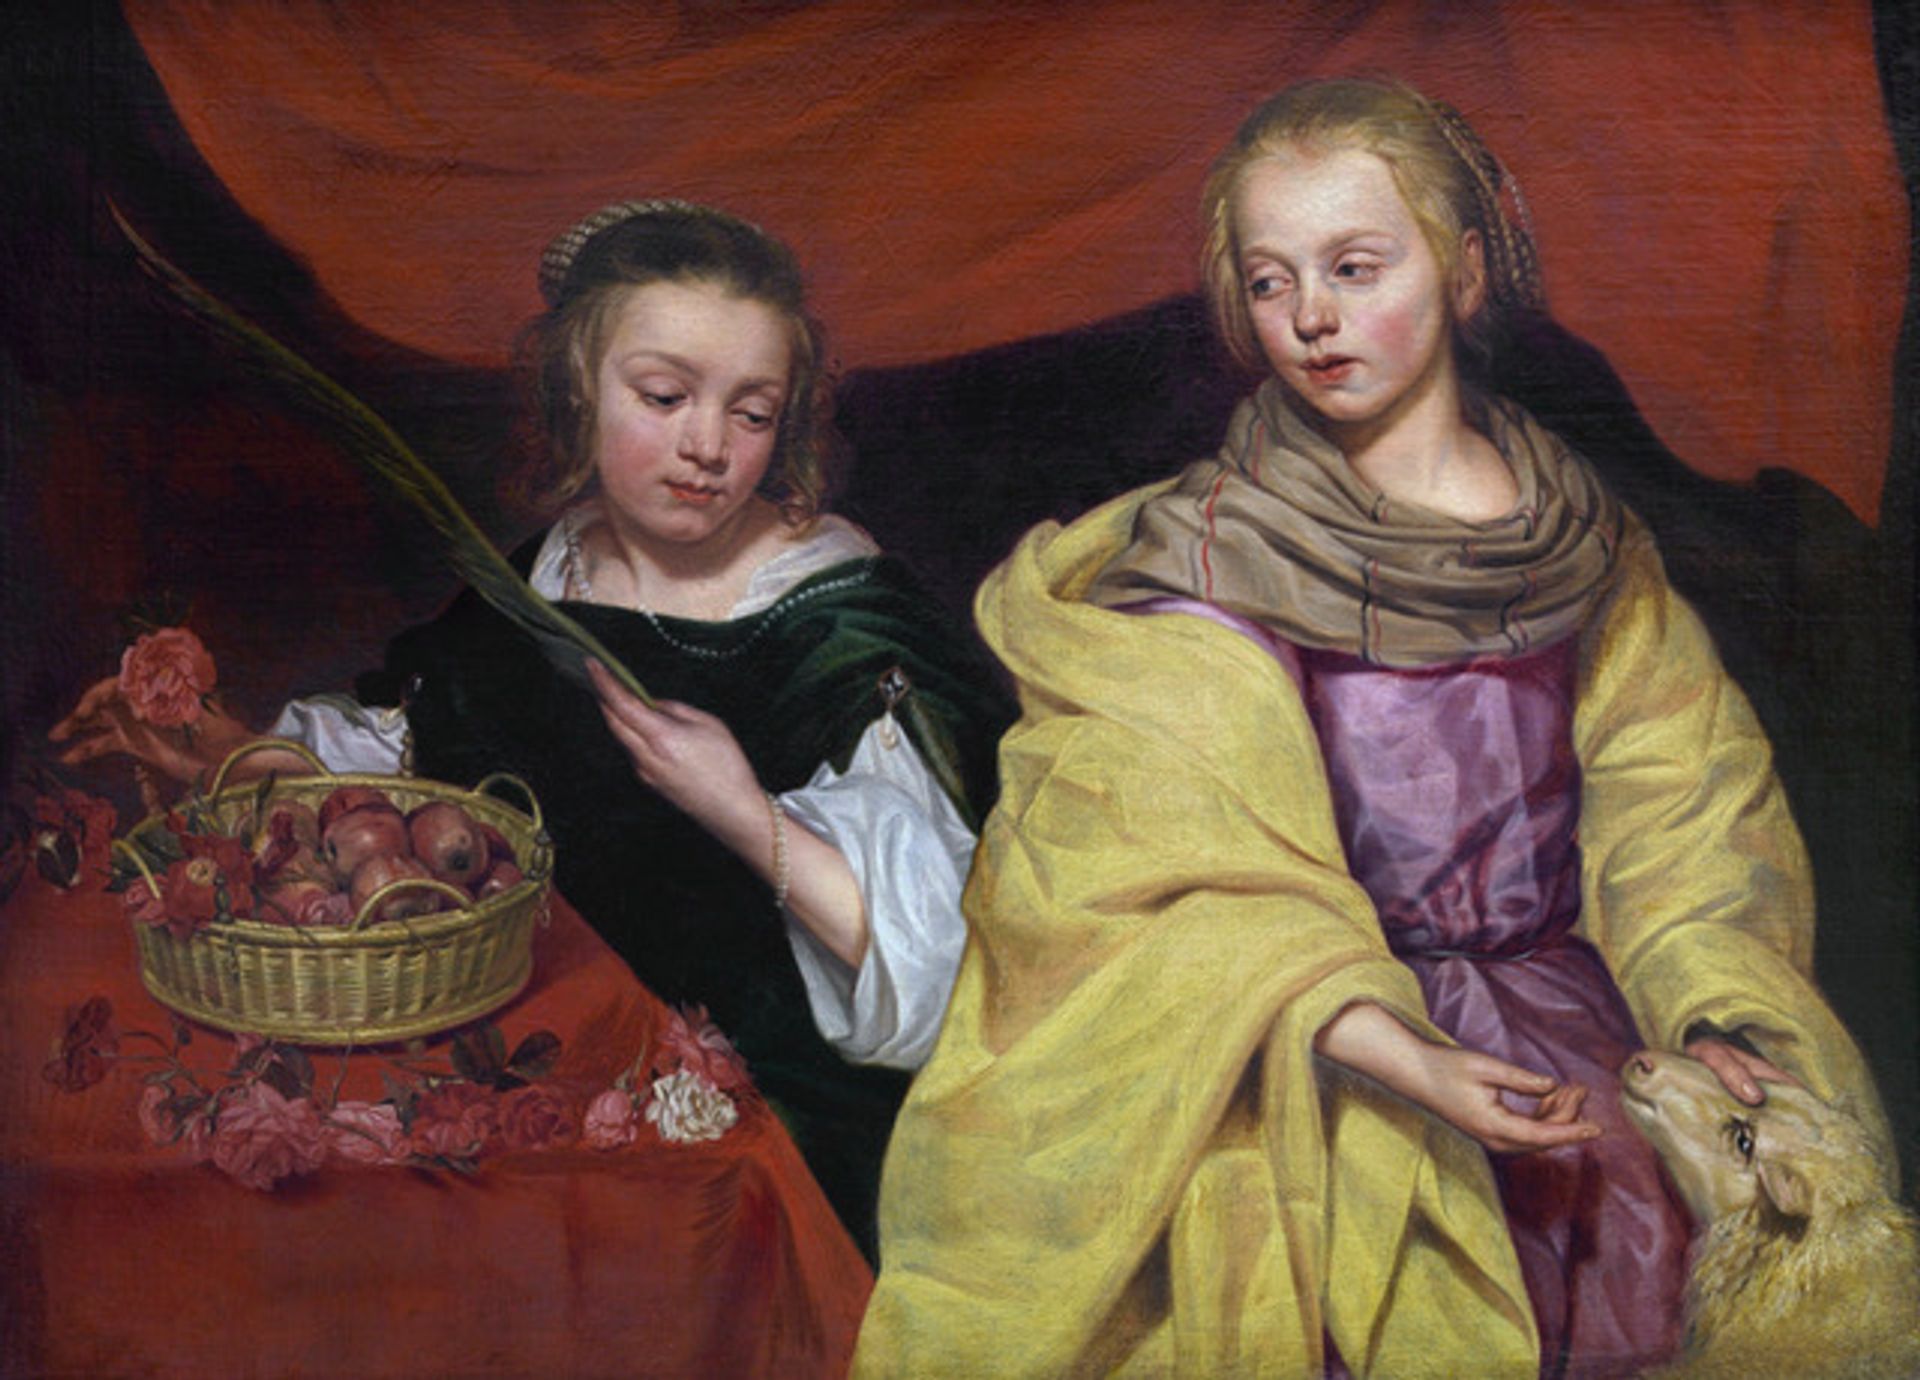 Michaelina Wautier, Deux jeunes filles en sainte Agnès et sainte Dorothée, vers 1650, huile sur toile. Photos : D.R.

